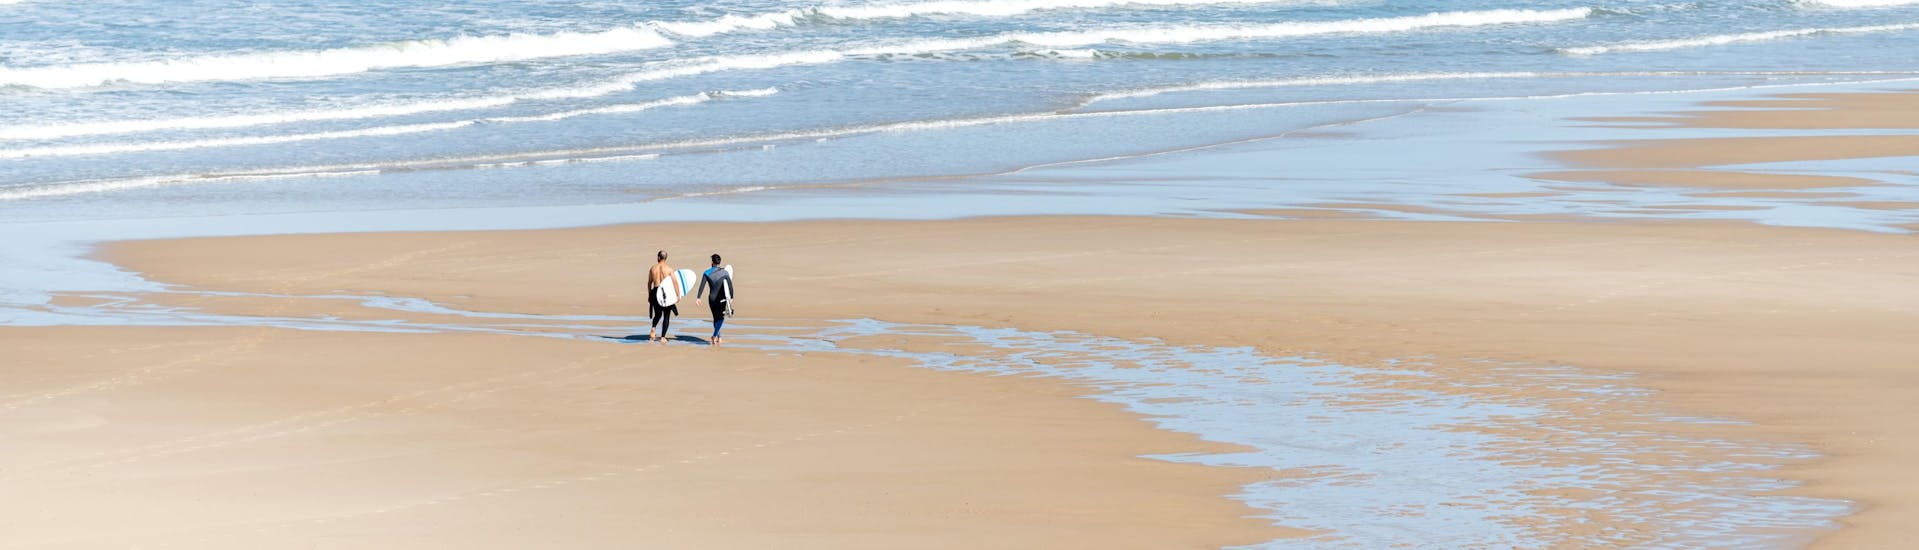 Deux hommes marchent sur la plage de Lacanau avec leur planche de surf sous le bras, où se déroulent de nombreux cours de surf.